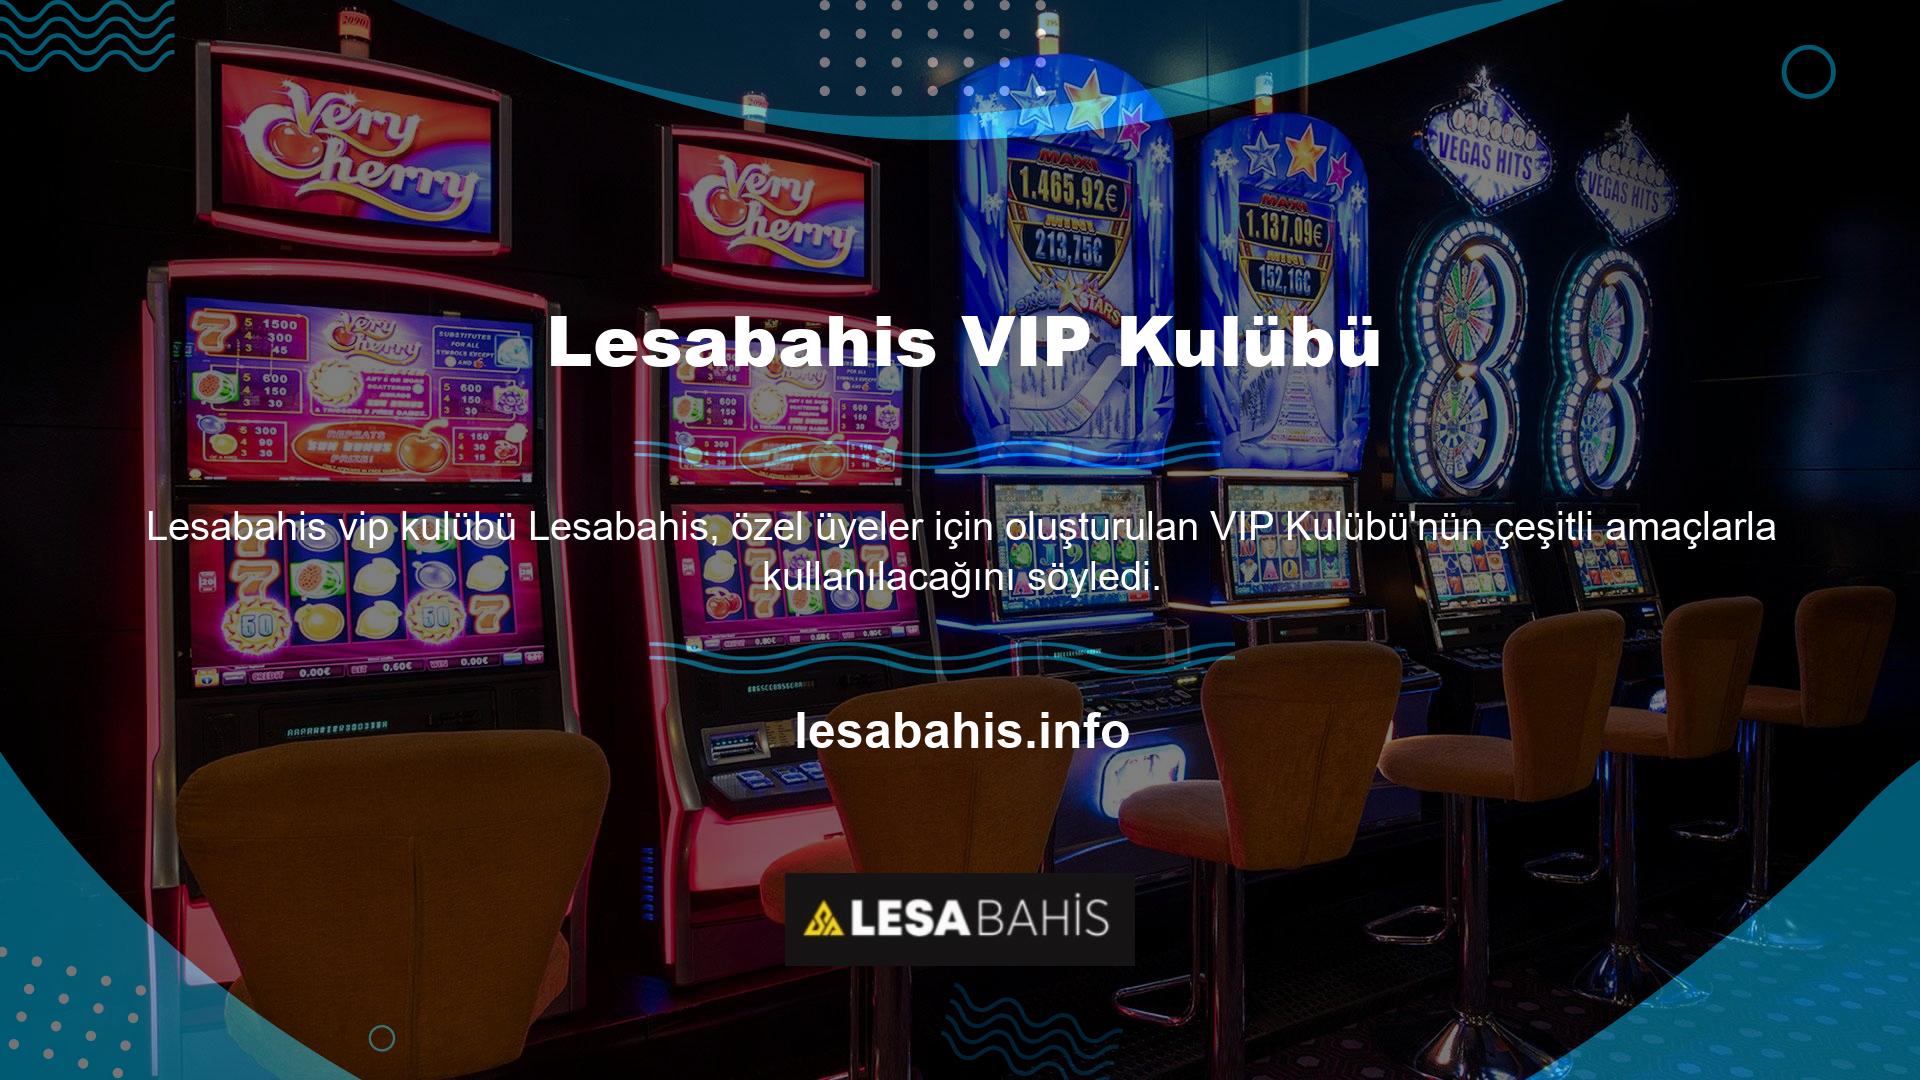 Lesabahis, "VIP Club, VIP üyeler için özel WhatsApp/telefon hizmetleri, sürpriz ikramiyeler, uygun finansal fırsatlar ve diğer pek çok avantaj sunuyor" dedi